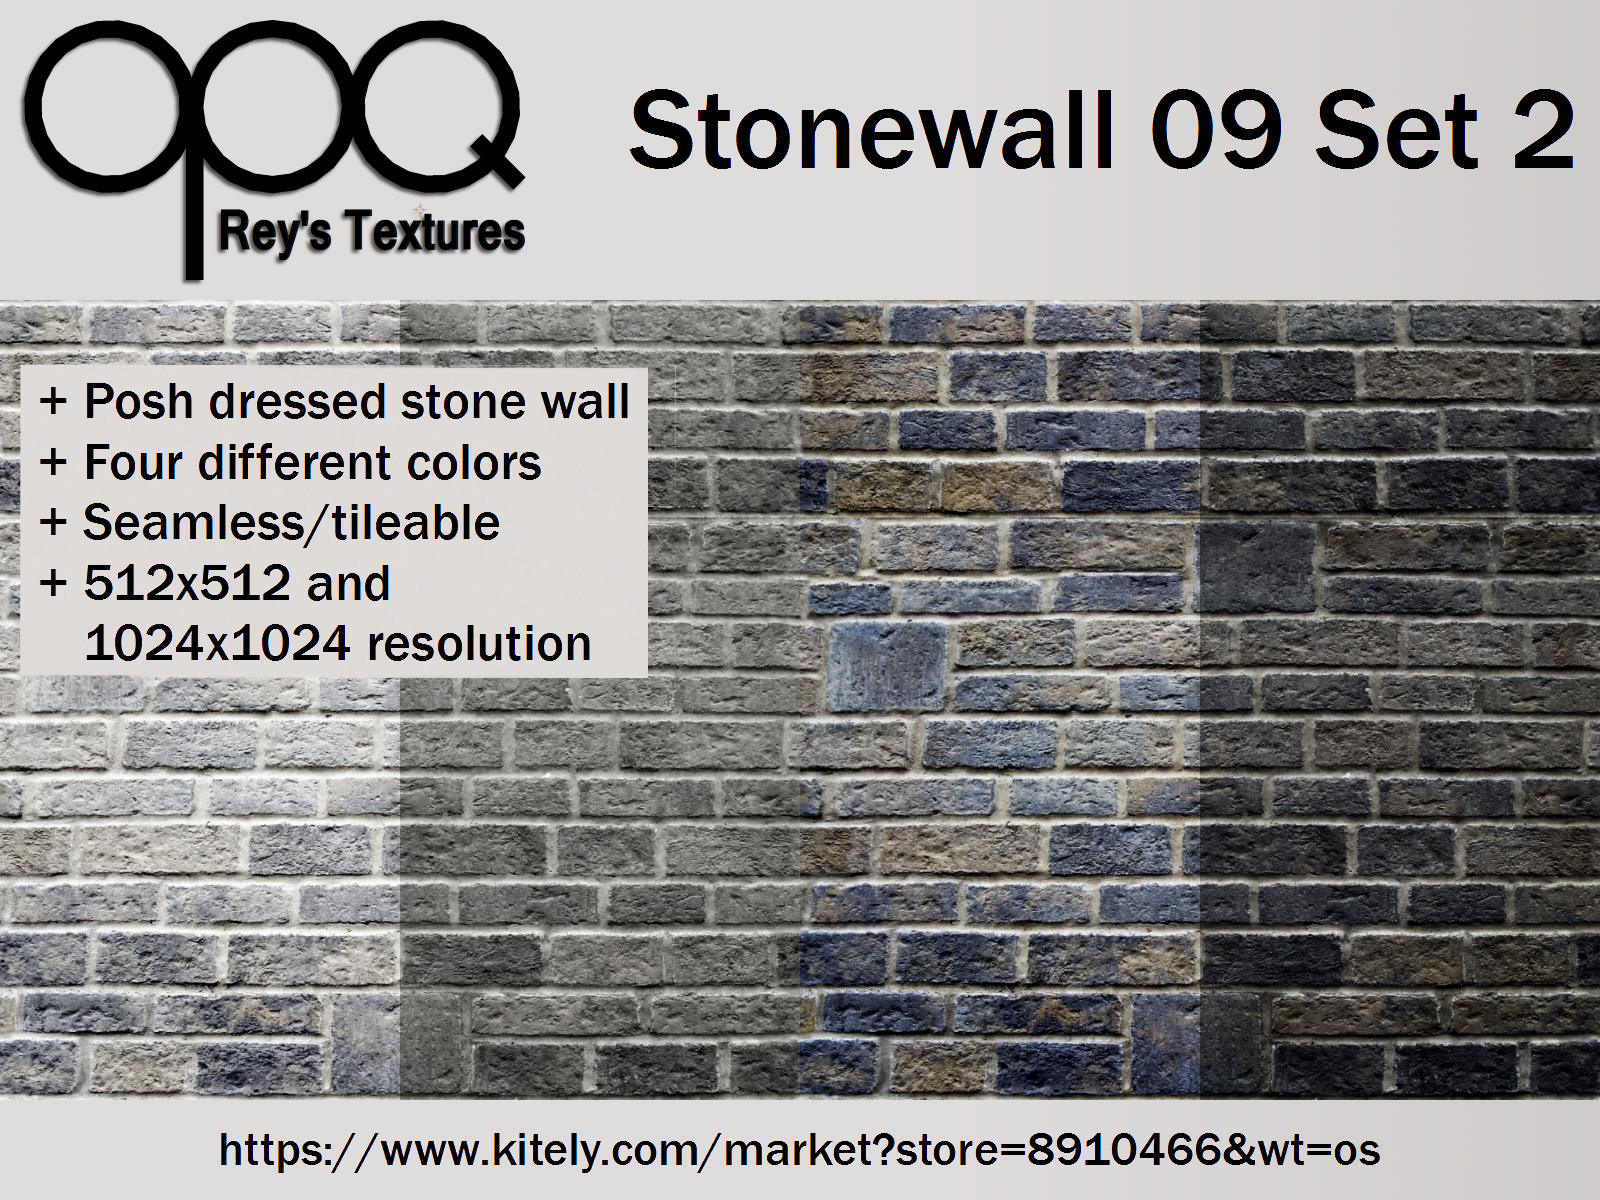 Rey's Stonewall 09 Set 2 Poster Kitely.jpg